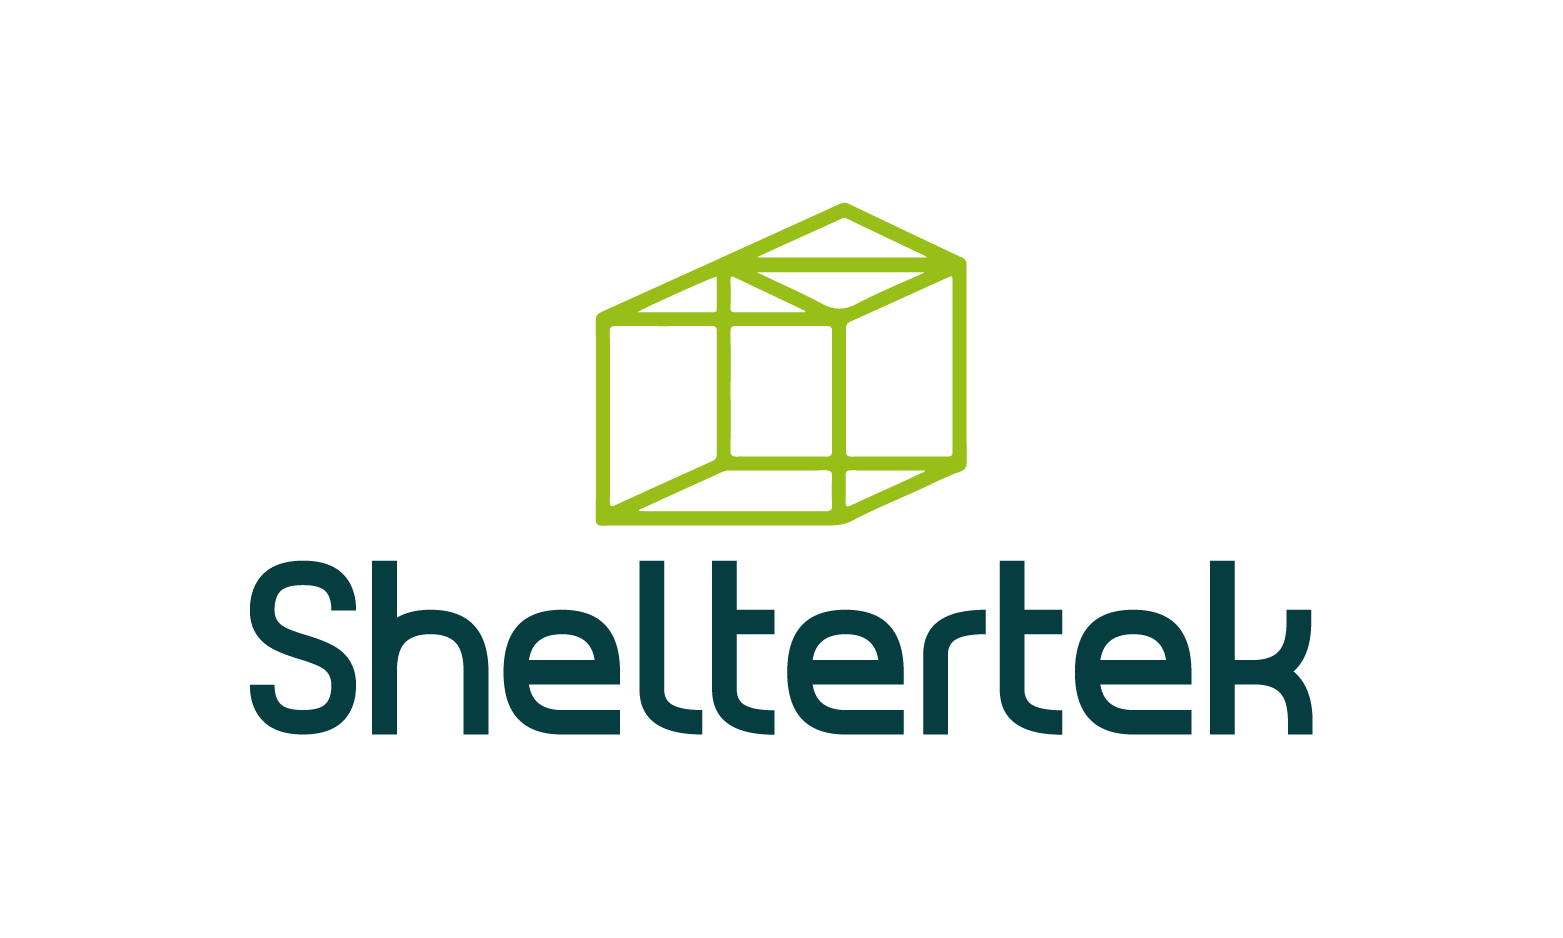 Sheltertek.com - Creative brandable domain for sale